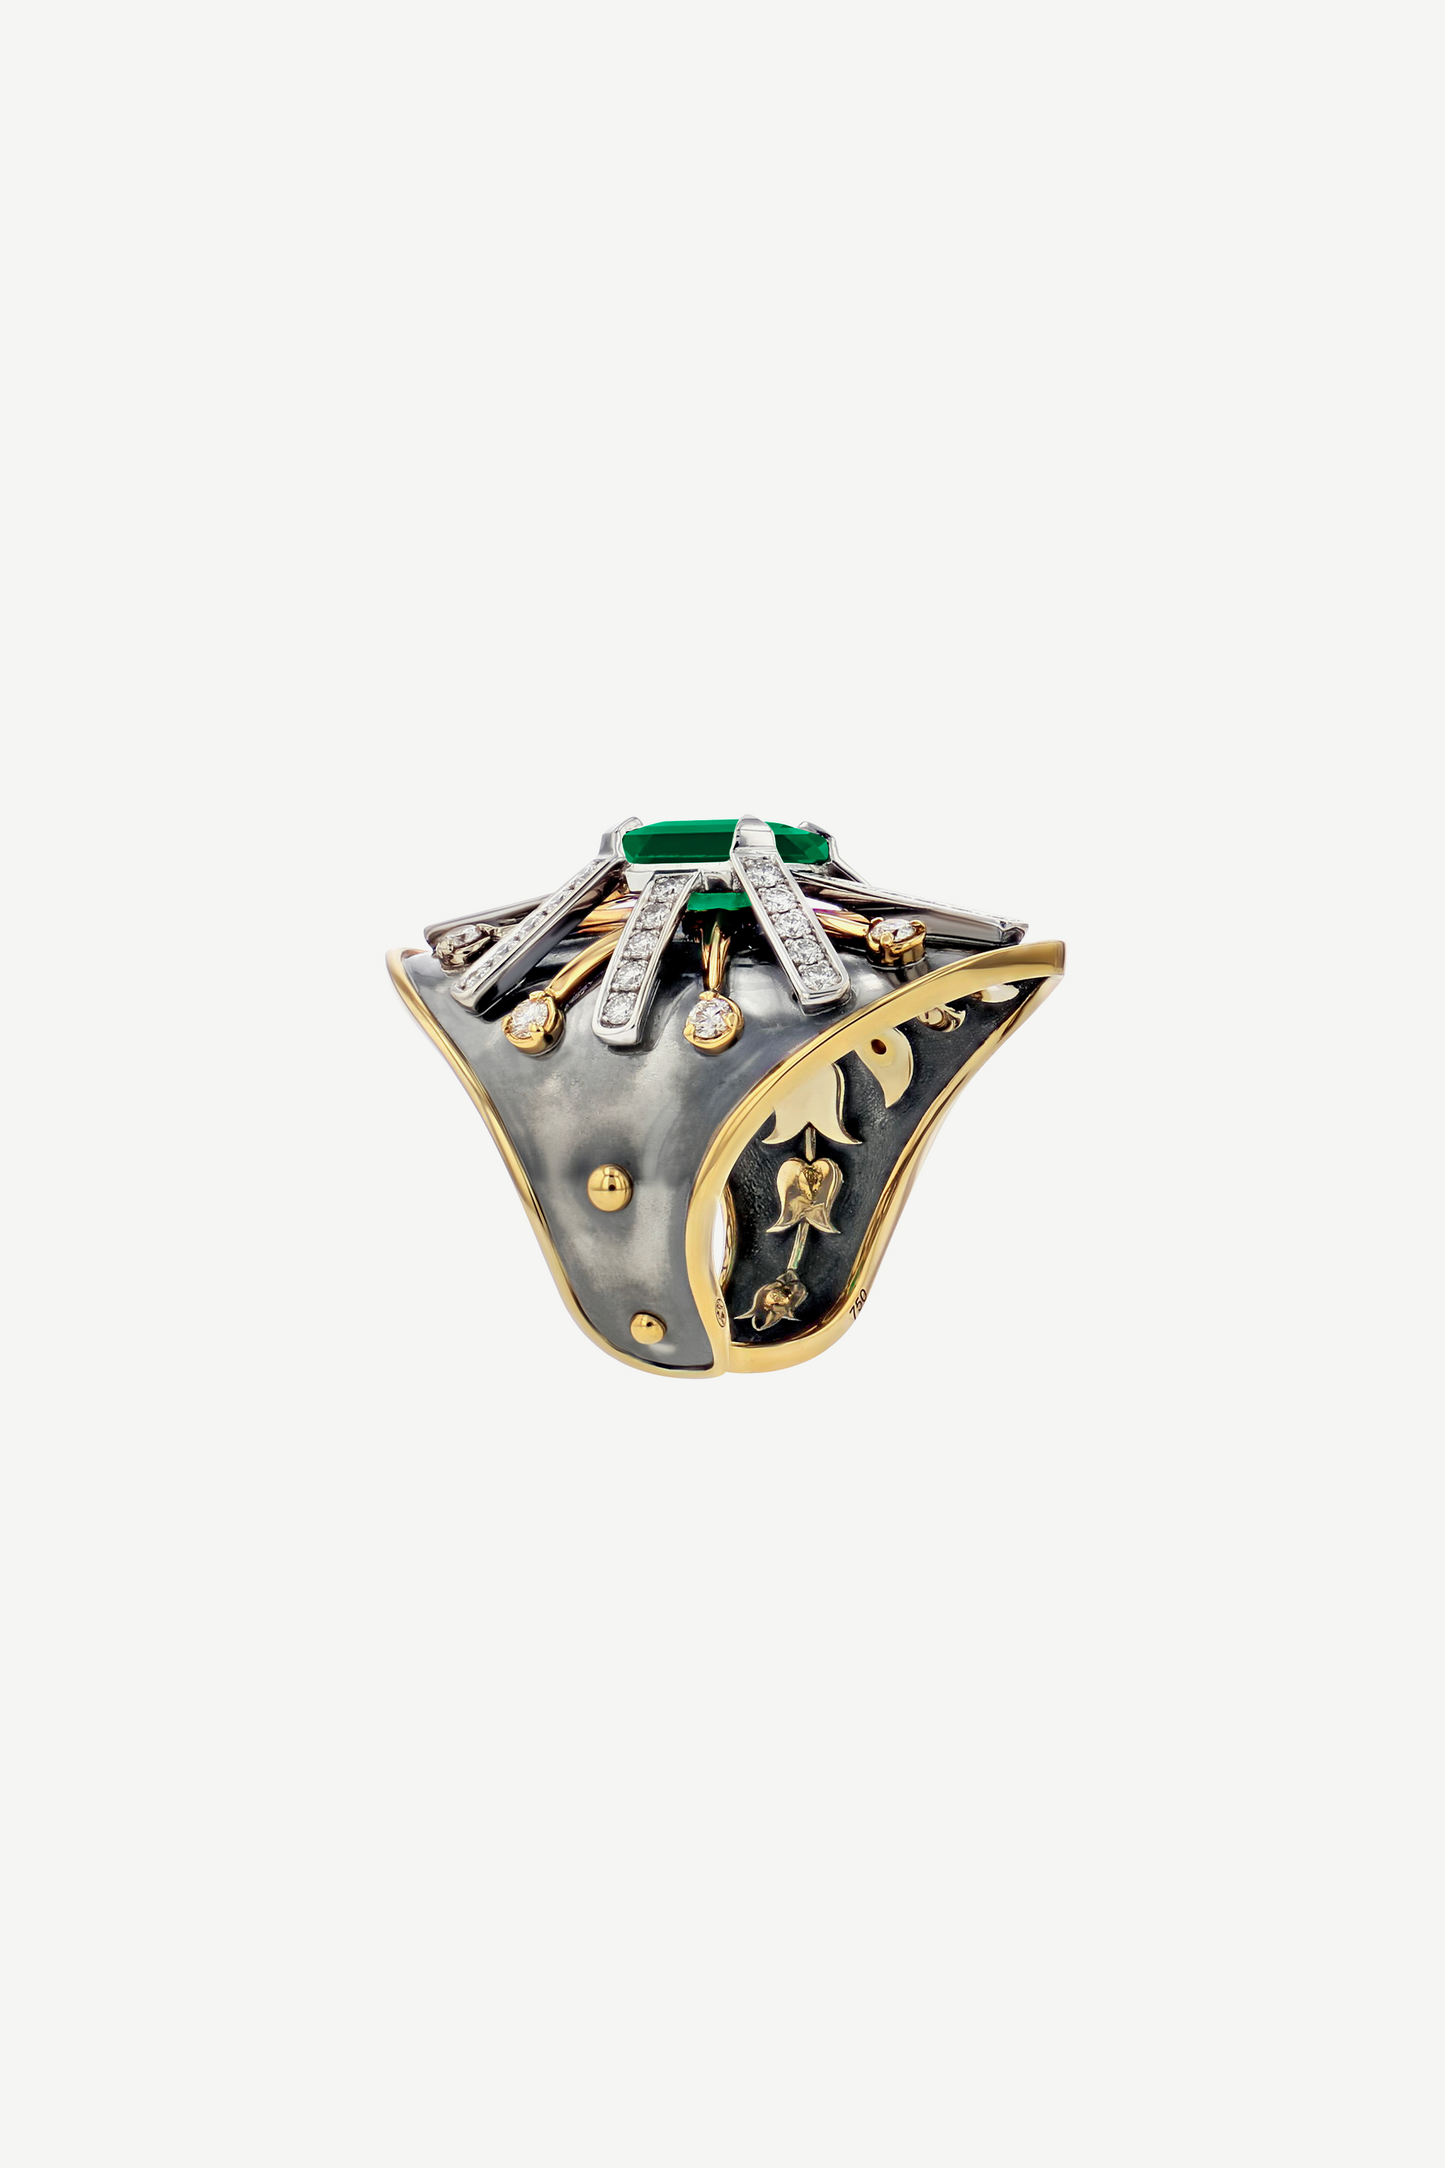 Emerald Ecu Ring